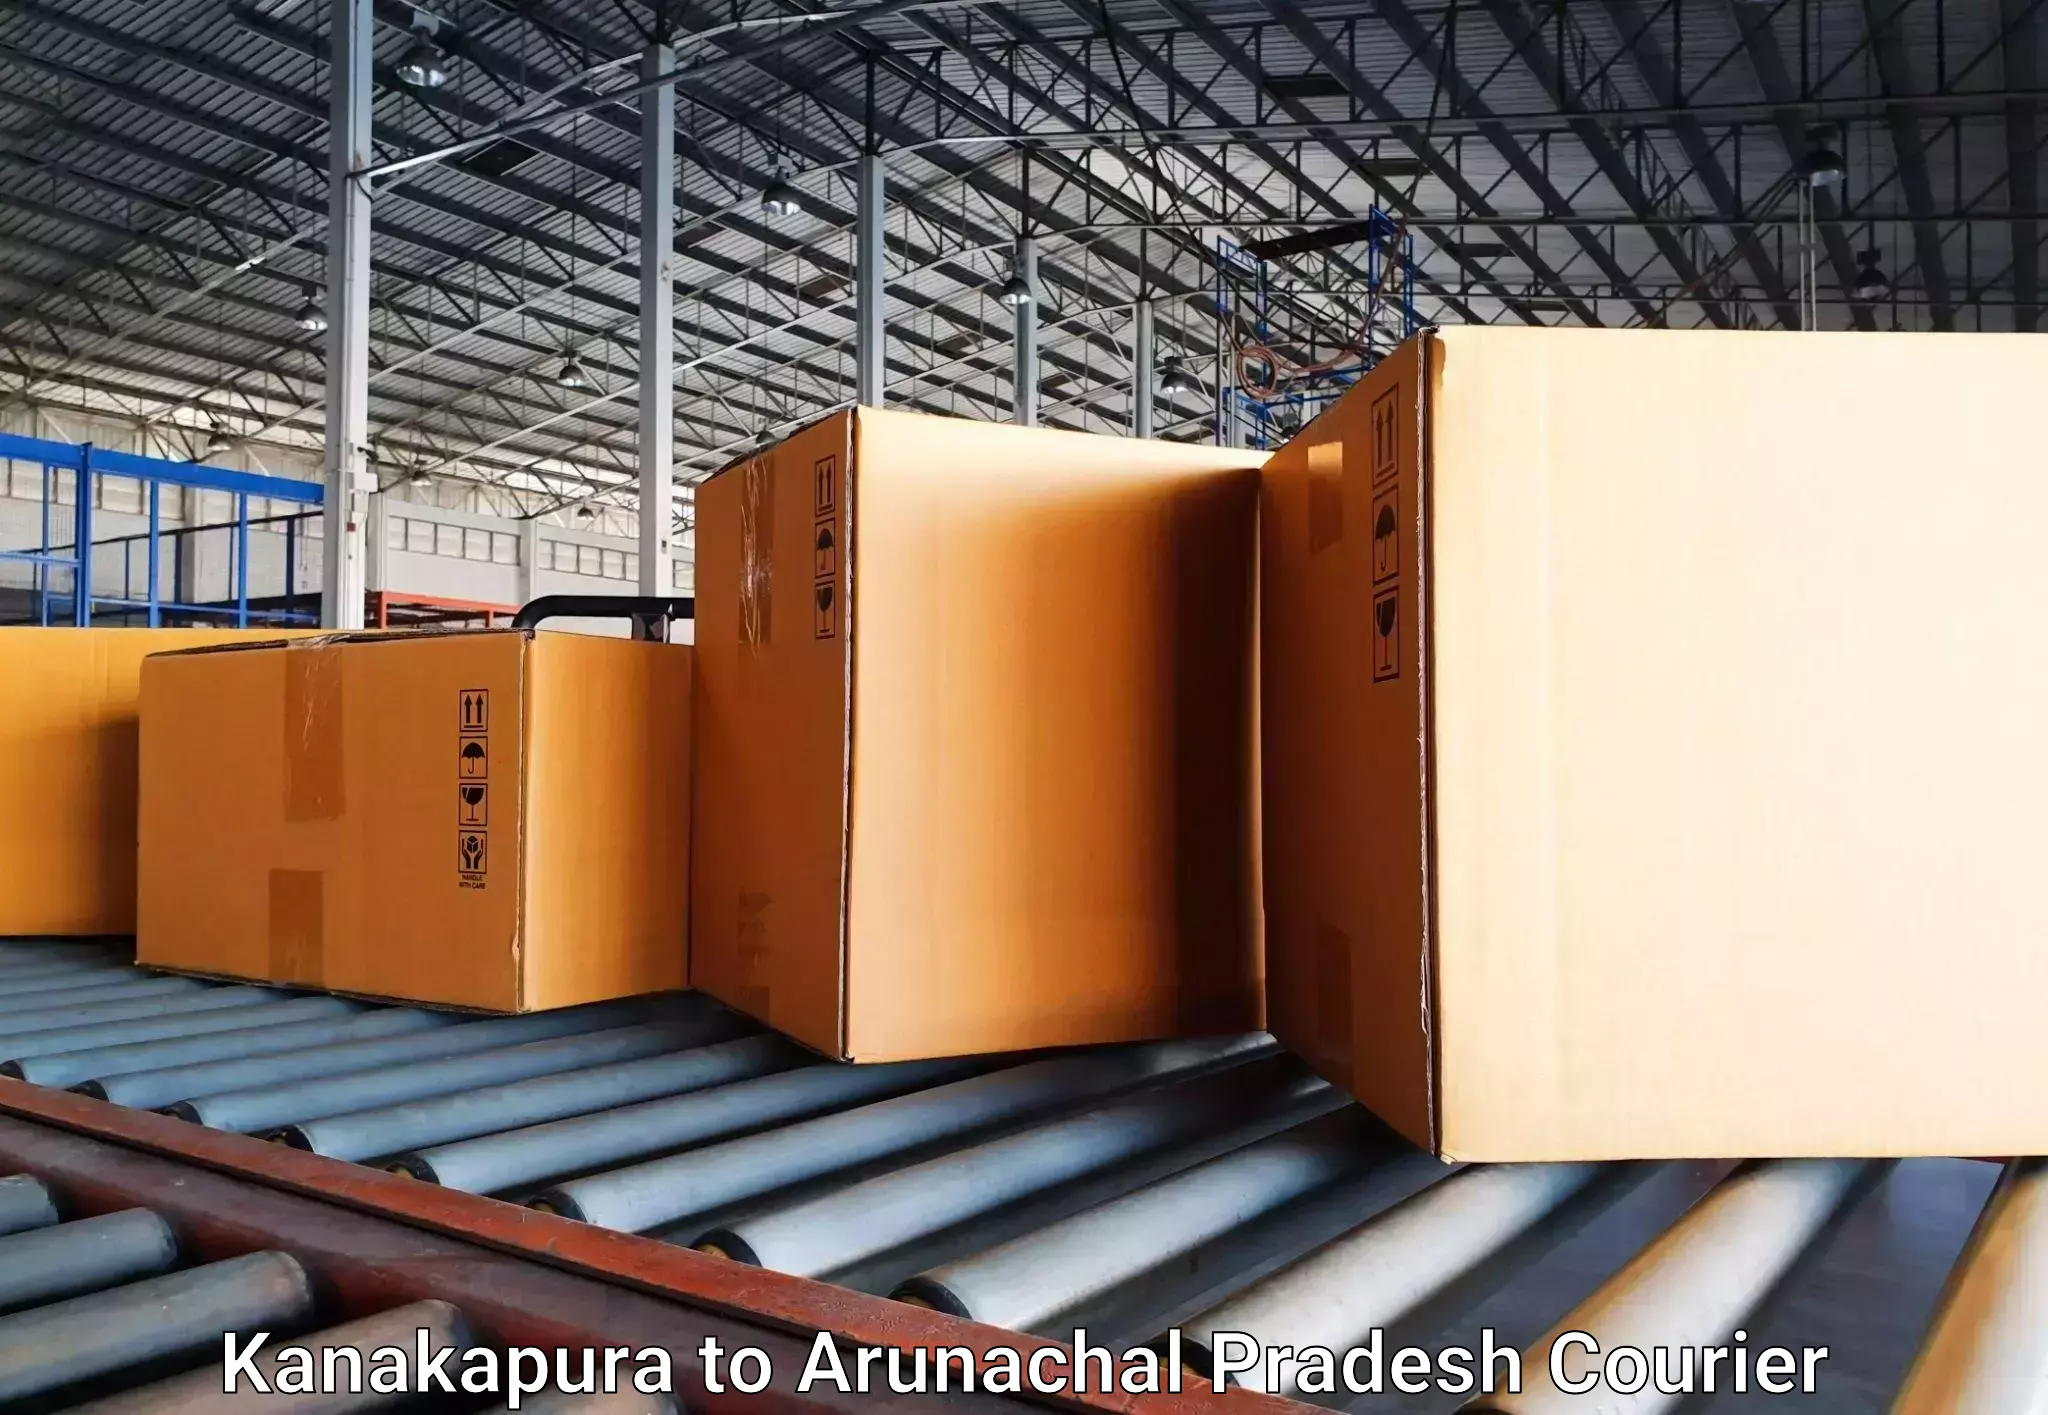 Baggage transport network Kanakapura to Arunachal Pradesh